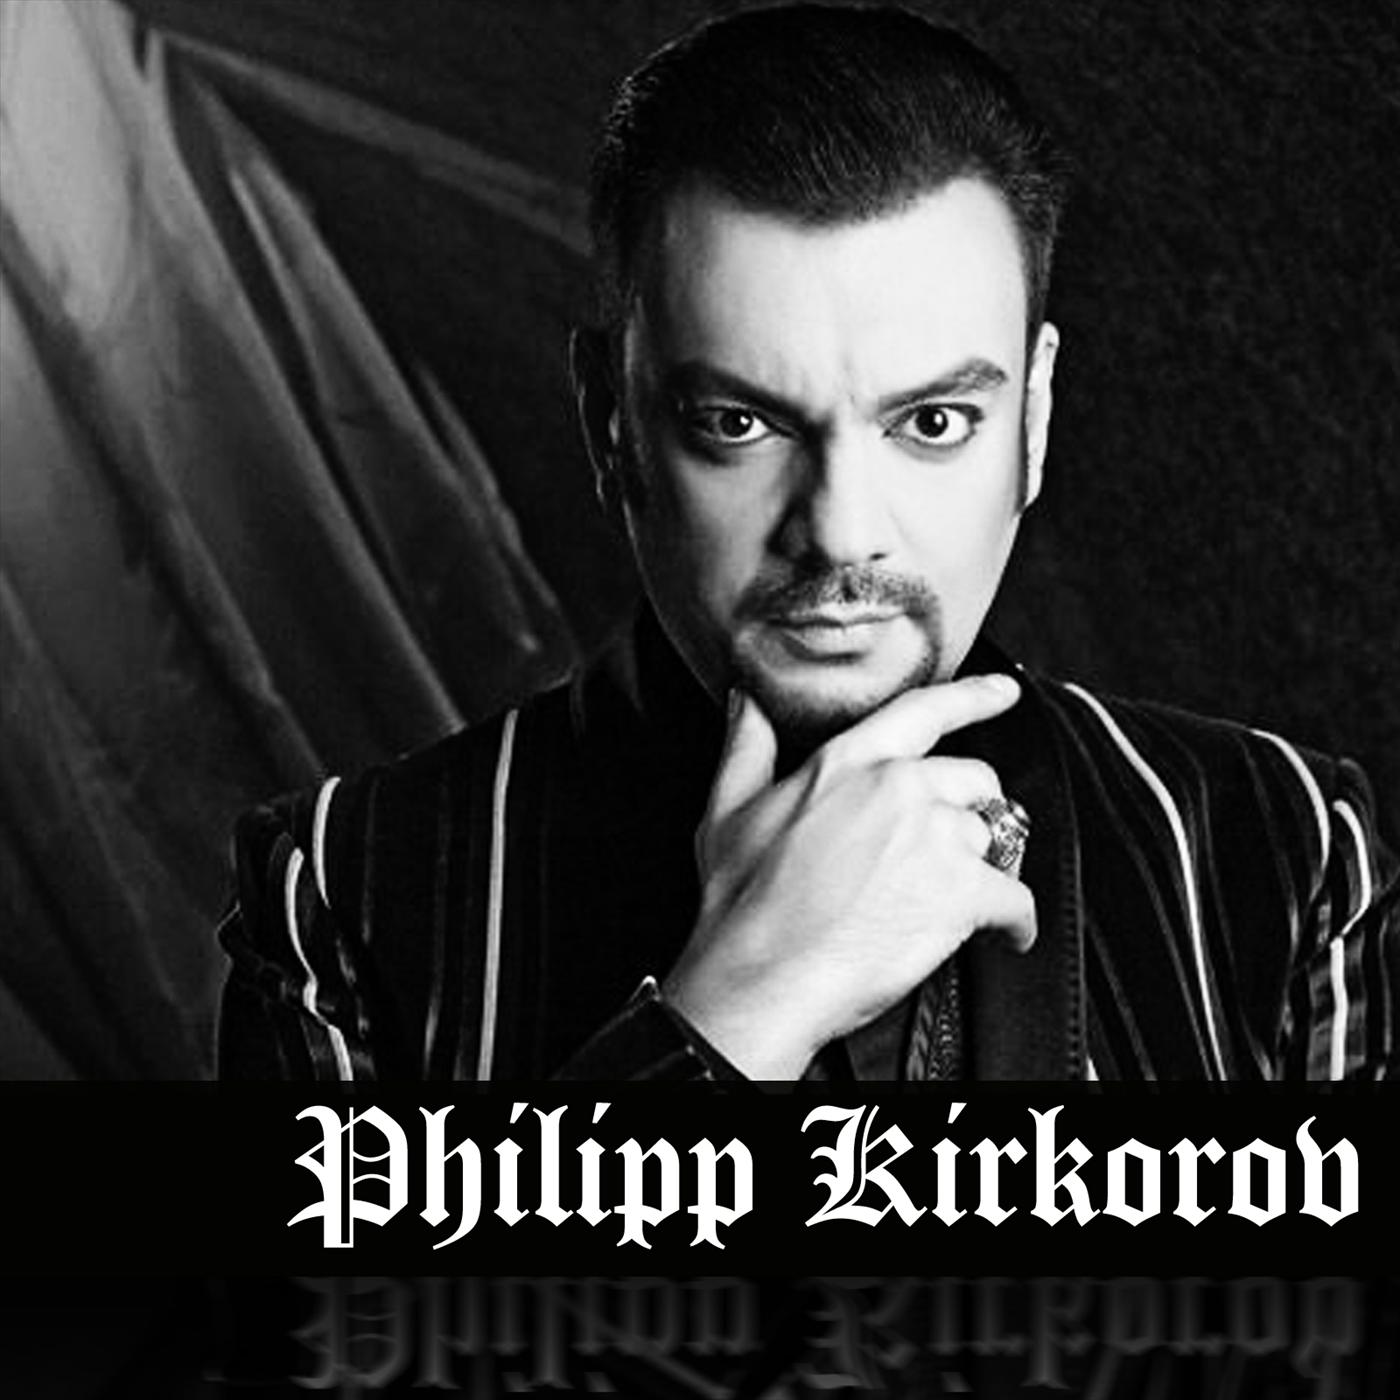 Philip Kirkorov